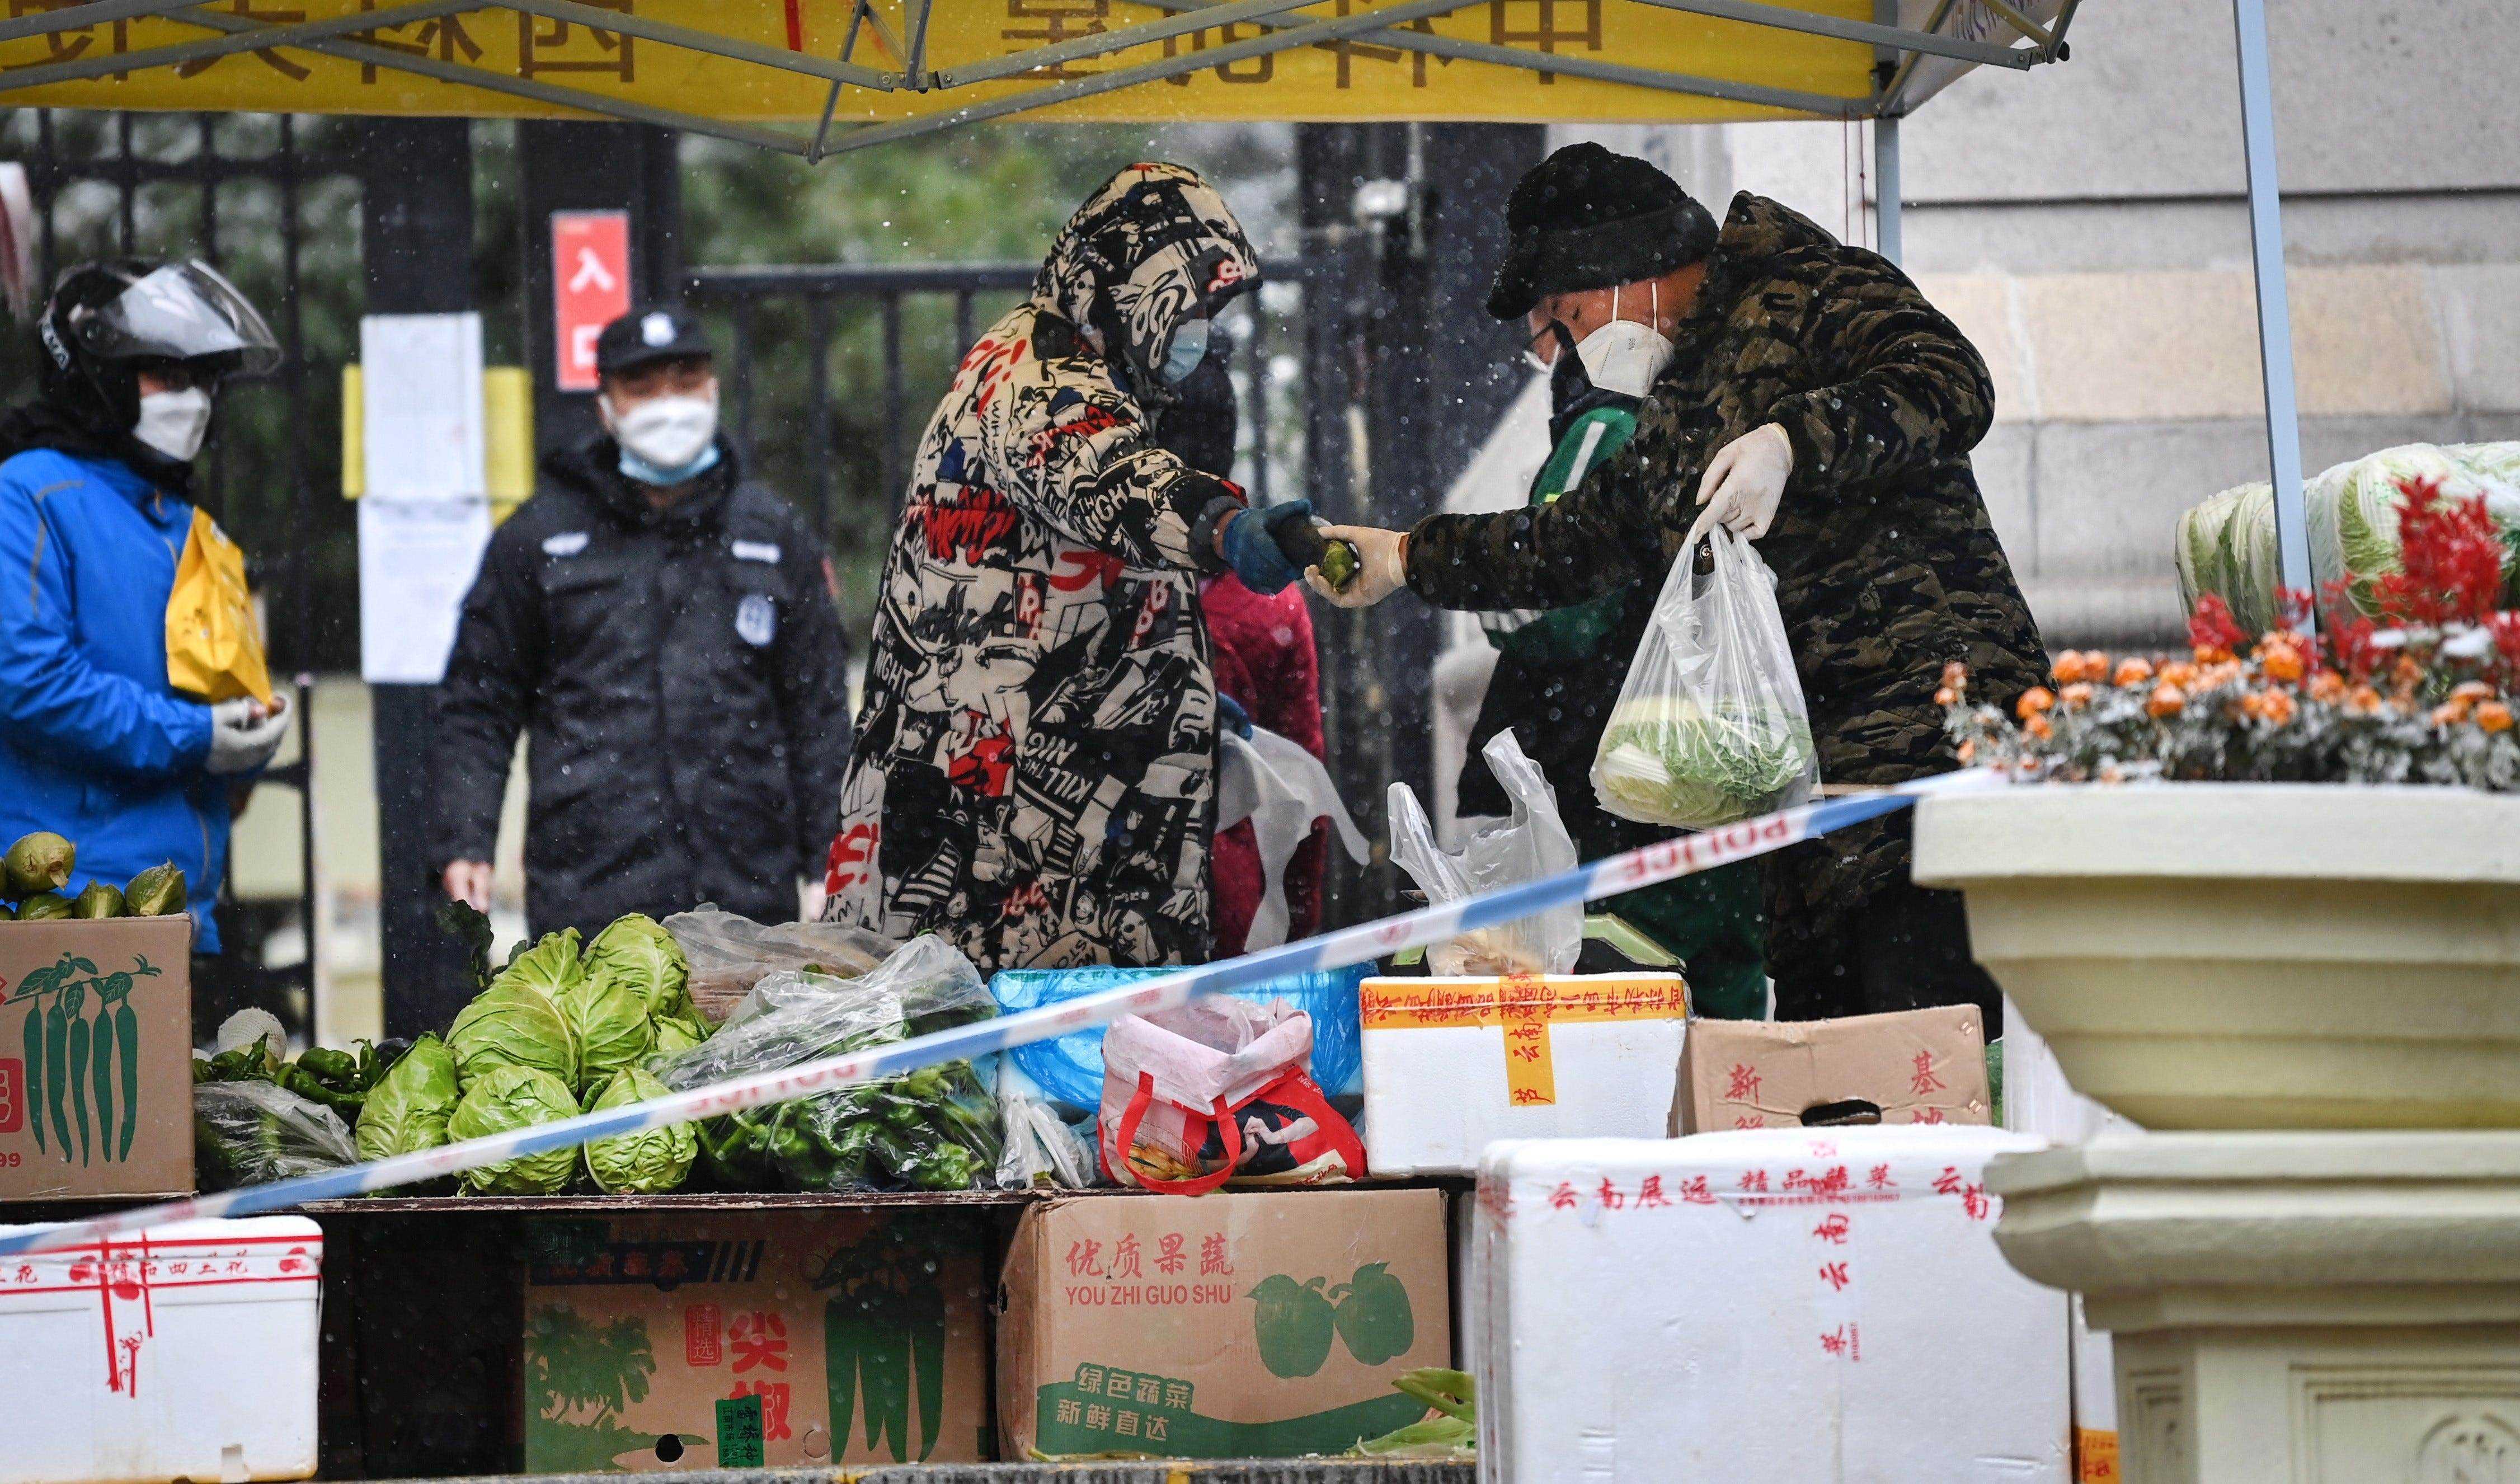 Am Eingang eines abgeschotteten Wohngebiets in Xi'an . entsteht ein Gemüsemarkt